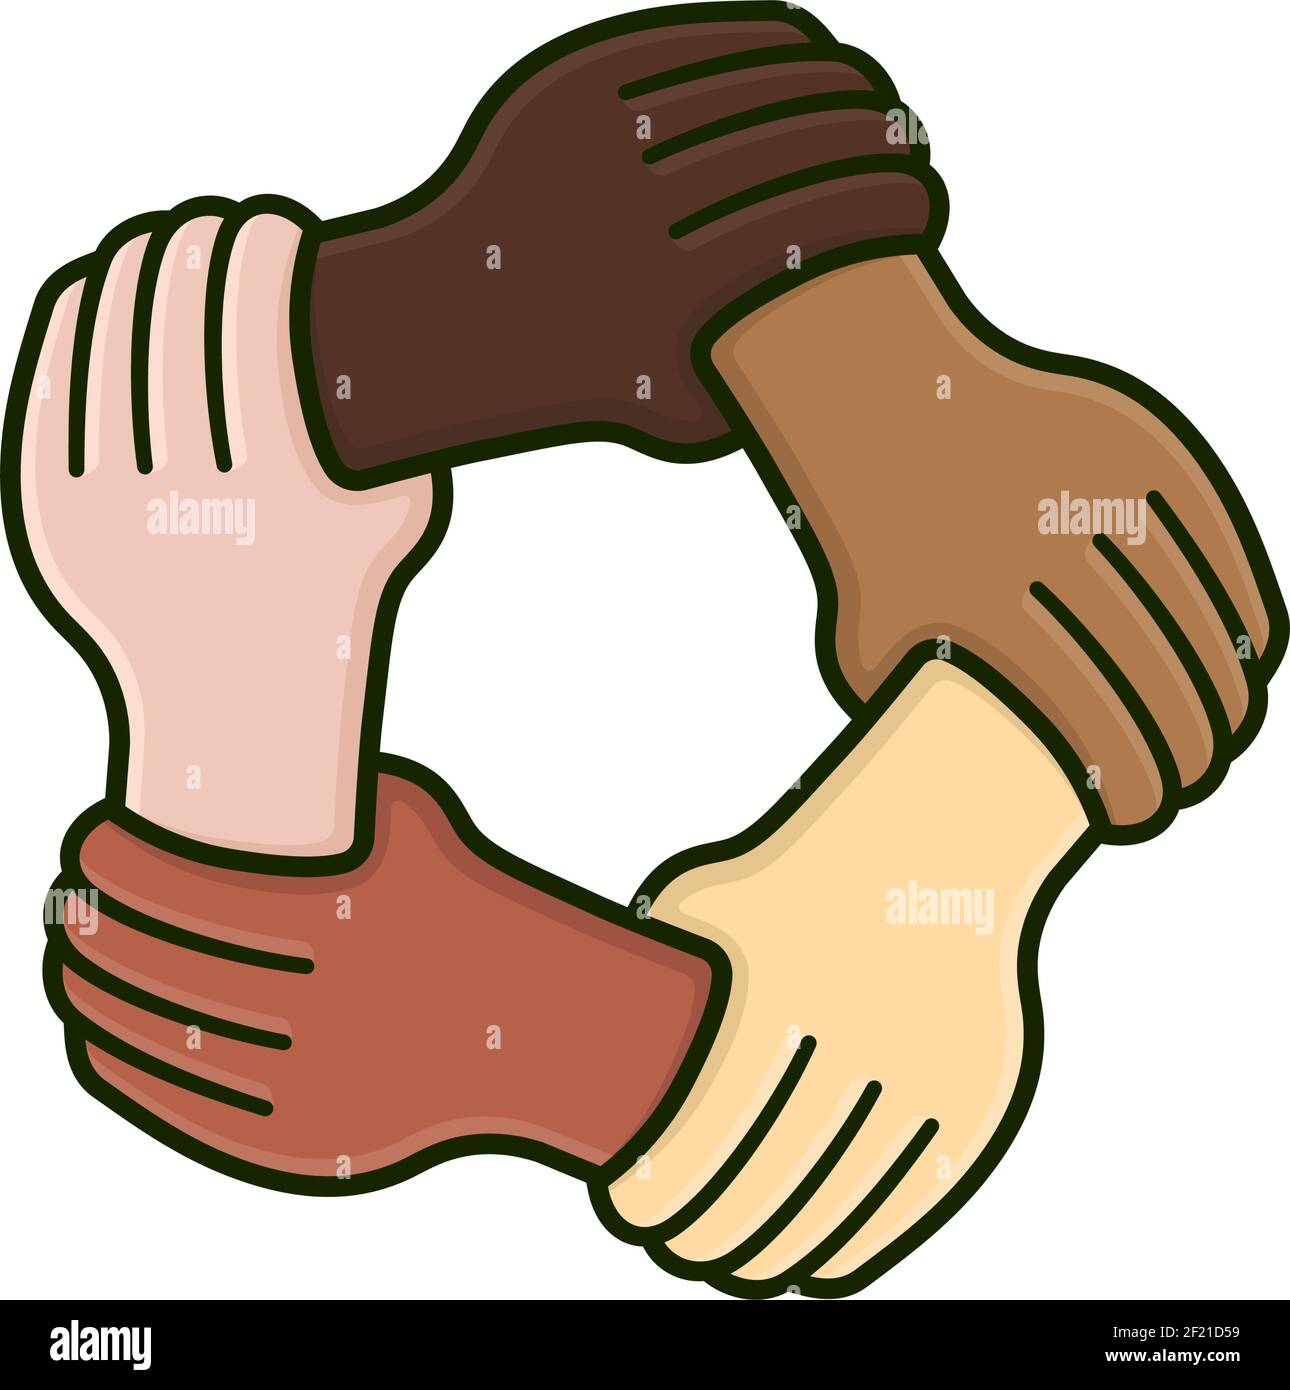 Fünf Hände mit unterschiedlichen Hautfarben halten sich gegenseitig am Handgelenk Isolierte Vektordarstellung für den multikulturellen Tag der Vielfalt am 18. Oktober Stock Vektor